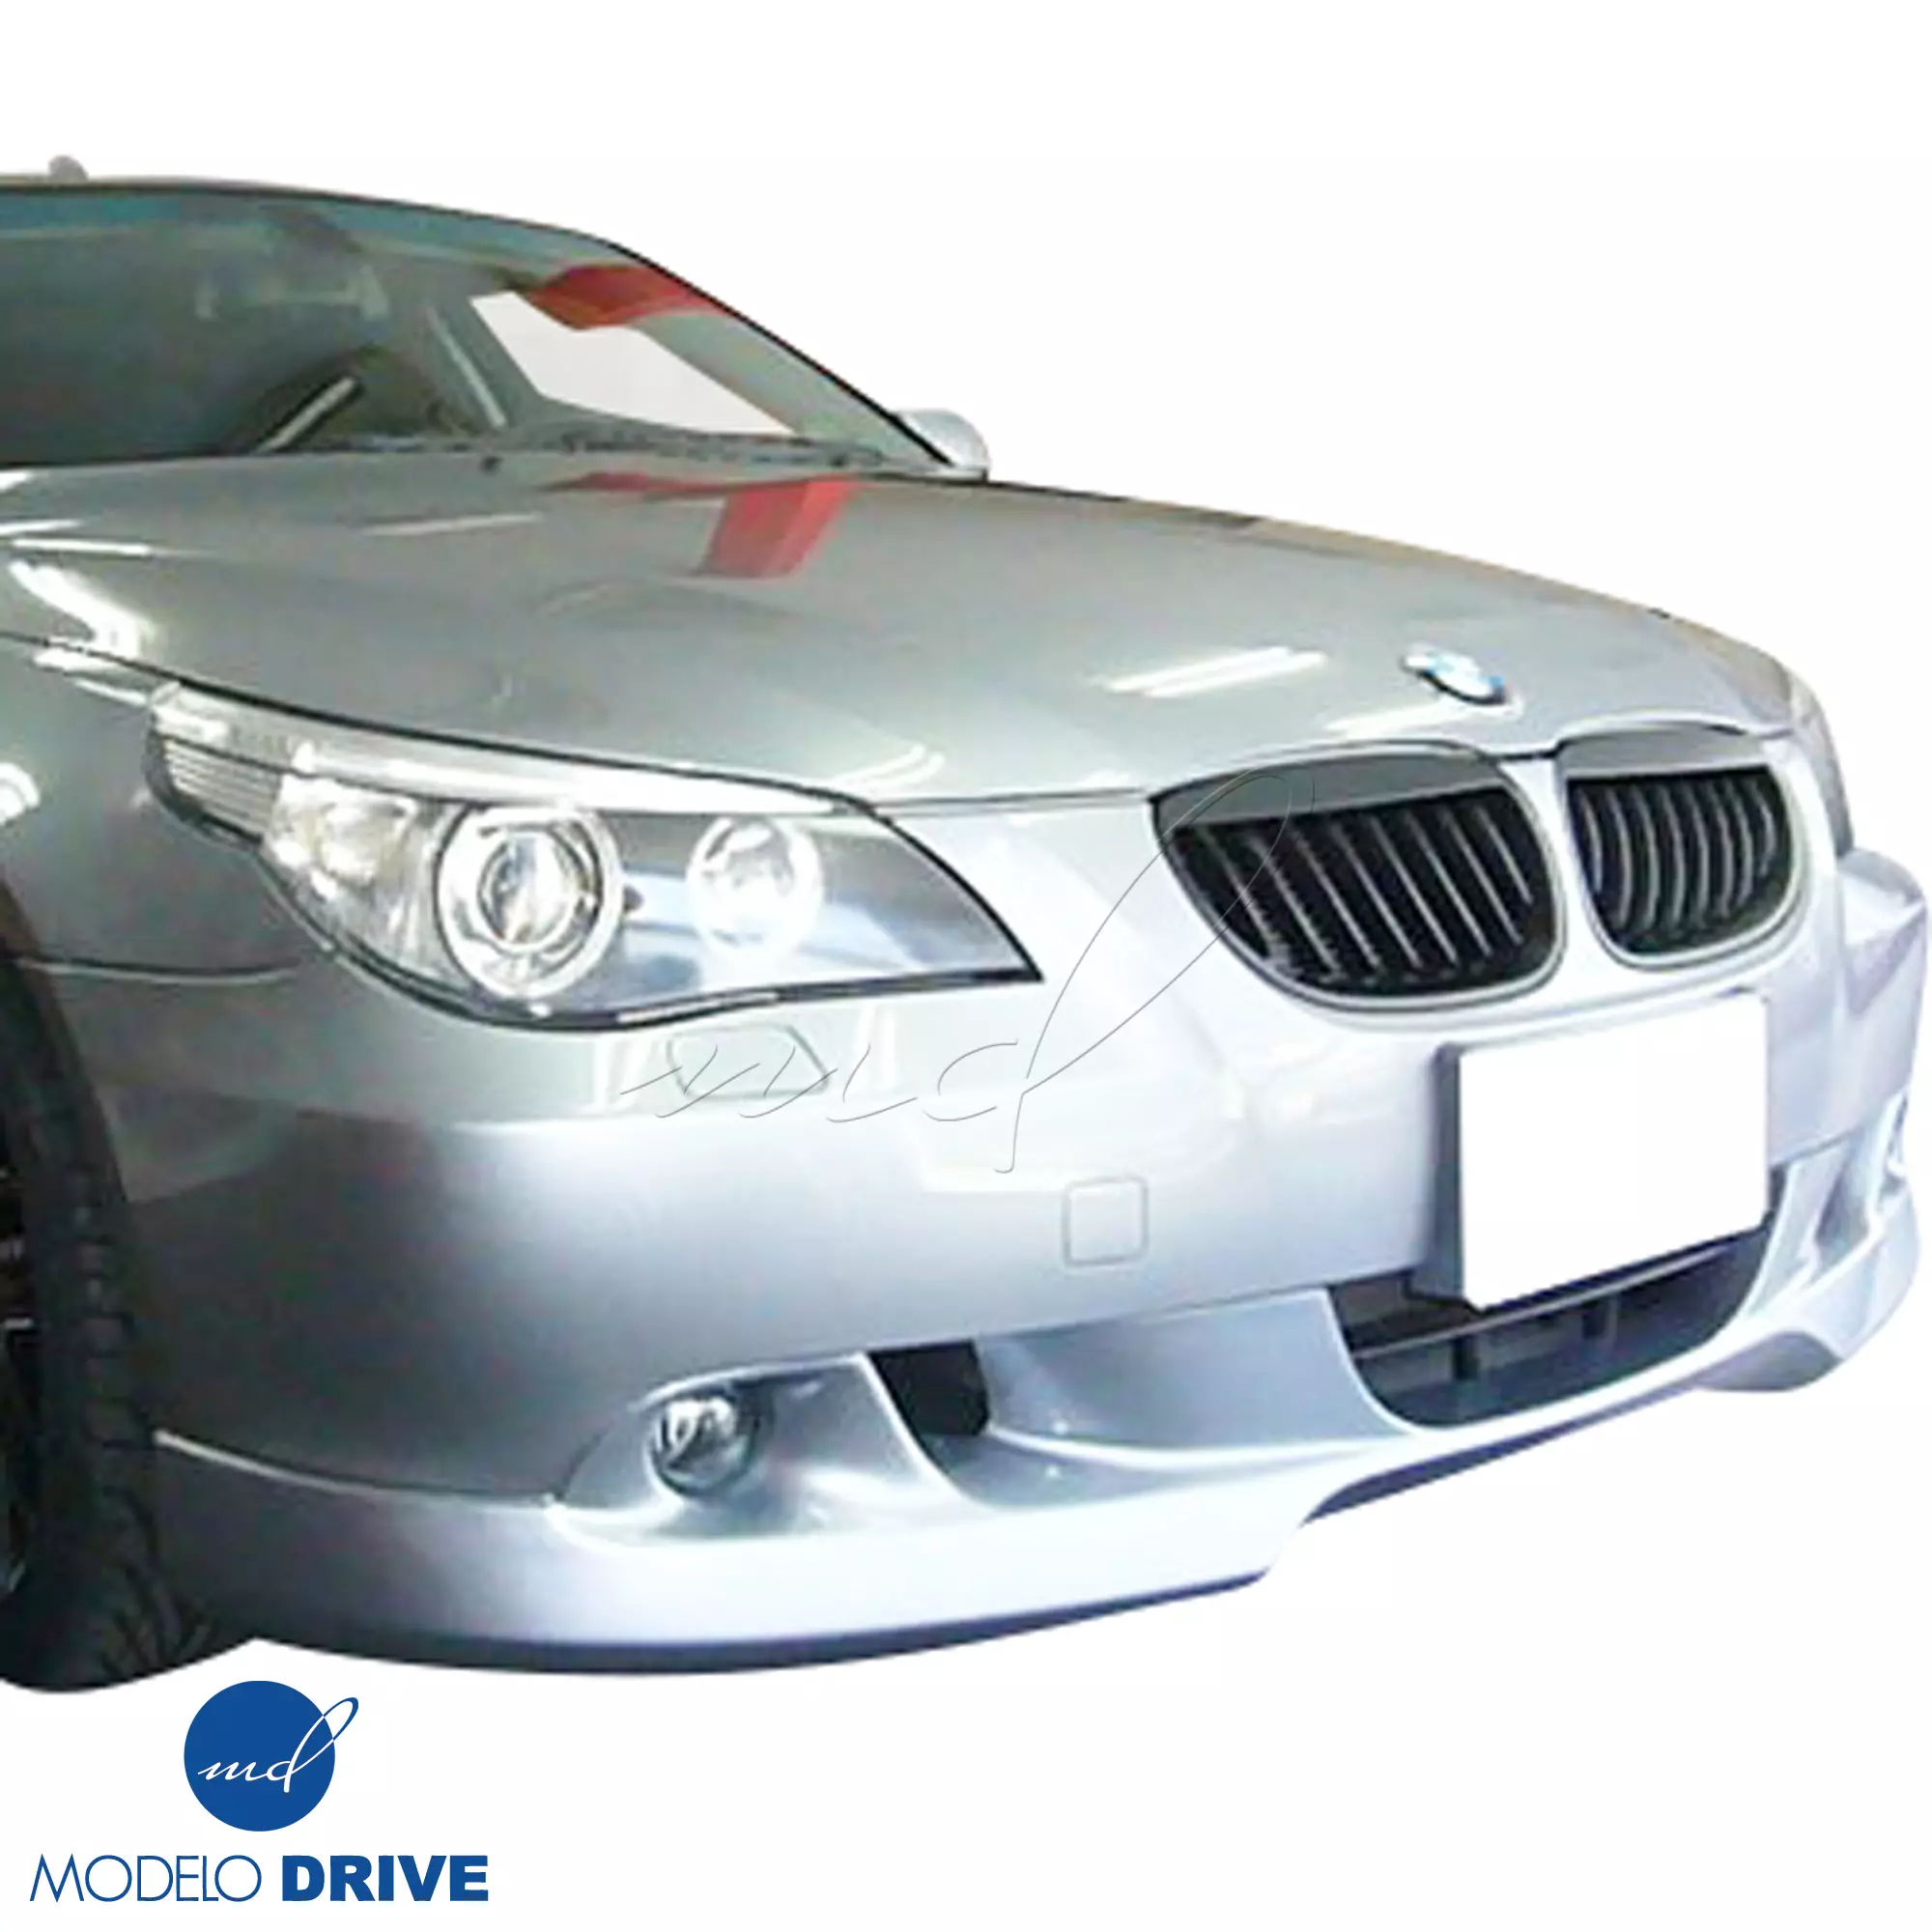 ModeloDrive FRP ASCH Body Kit 4pc > BMW 5-Series E60 2004-2010 > 4dr - Image 5